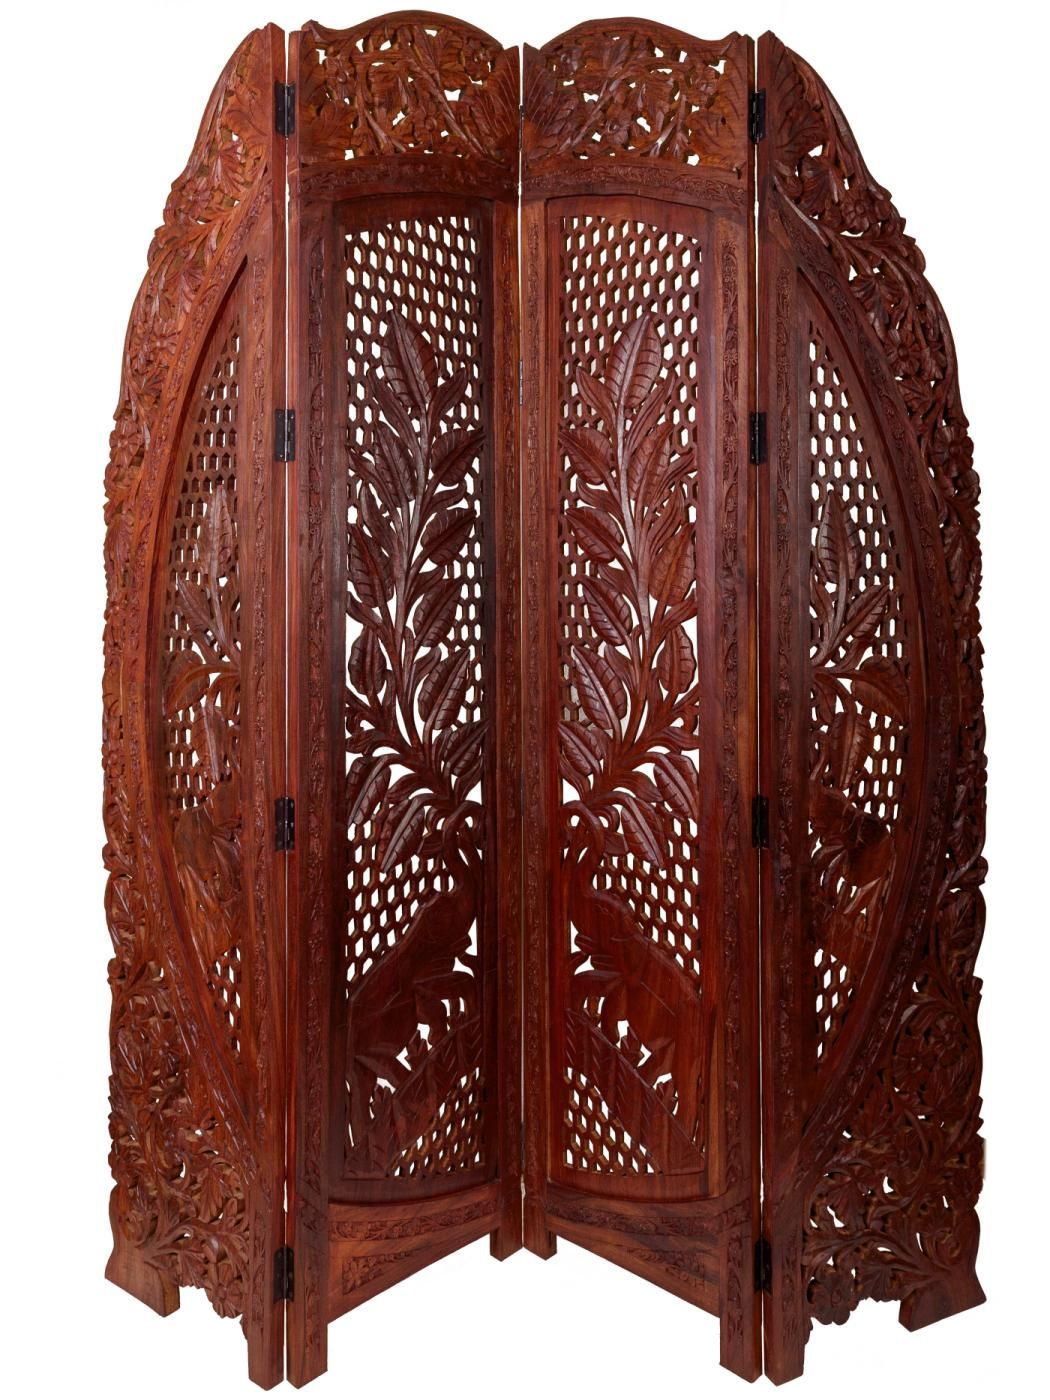 мебель из индийского дерева